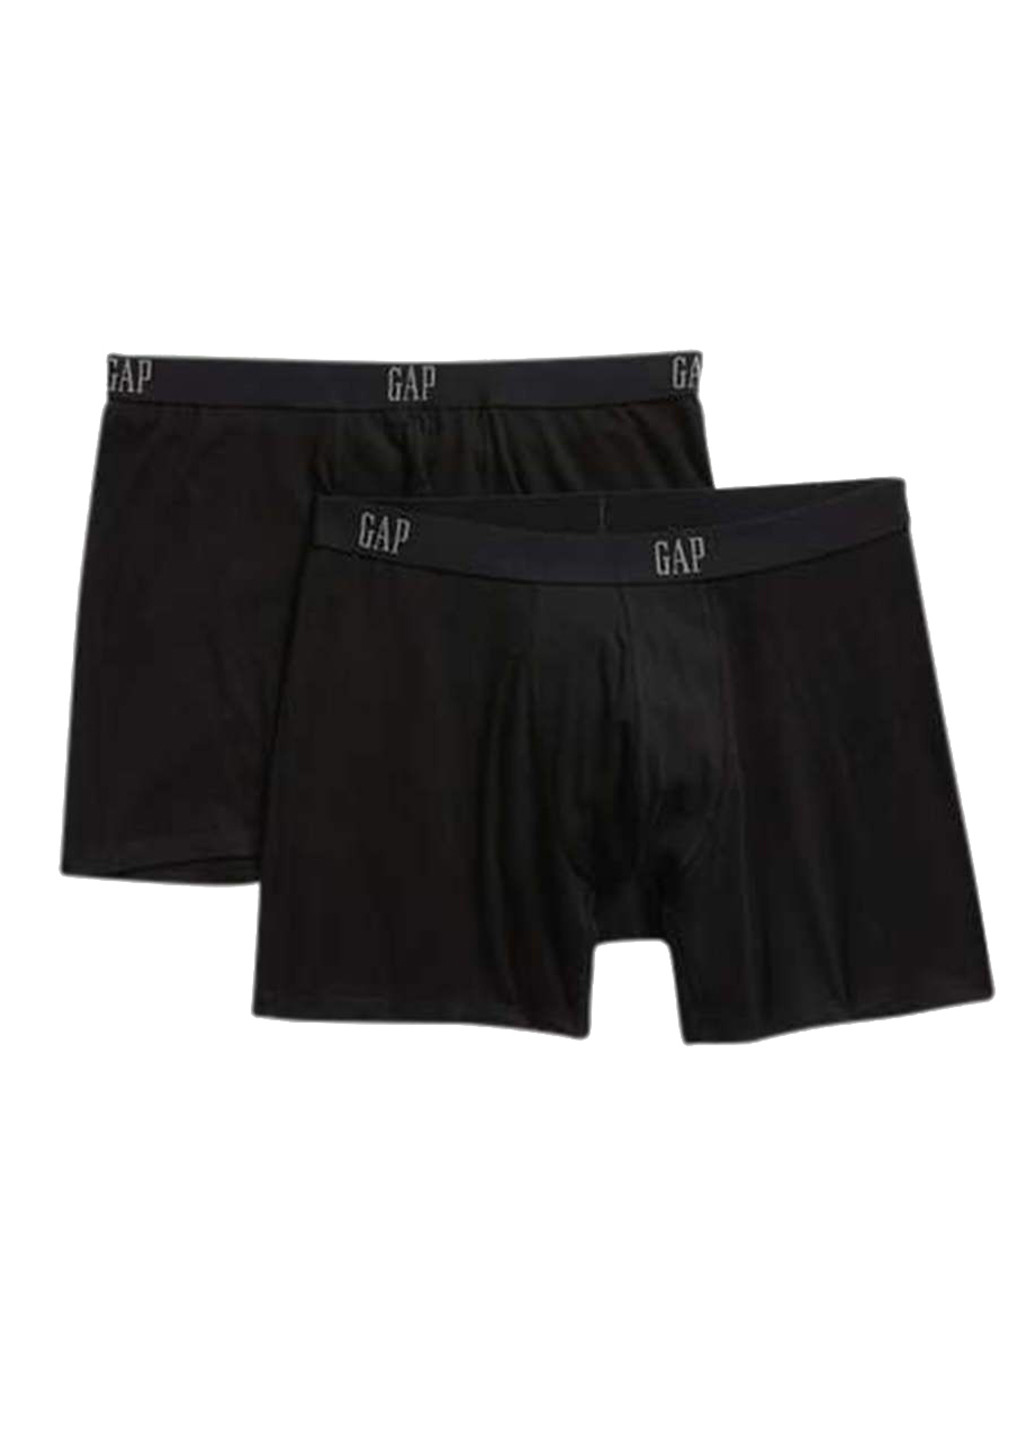 Трусы (2 шт.) Gap боксеры логотипы чёрные повседневные хлопок